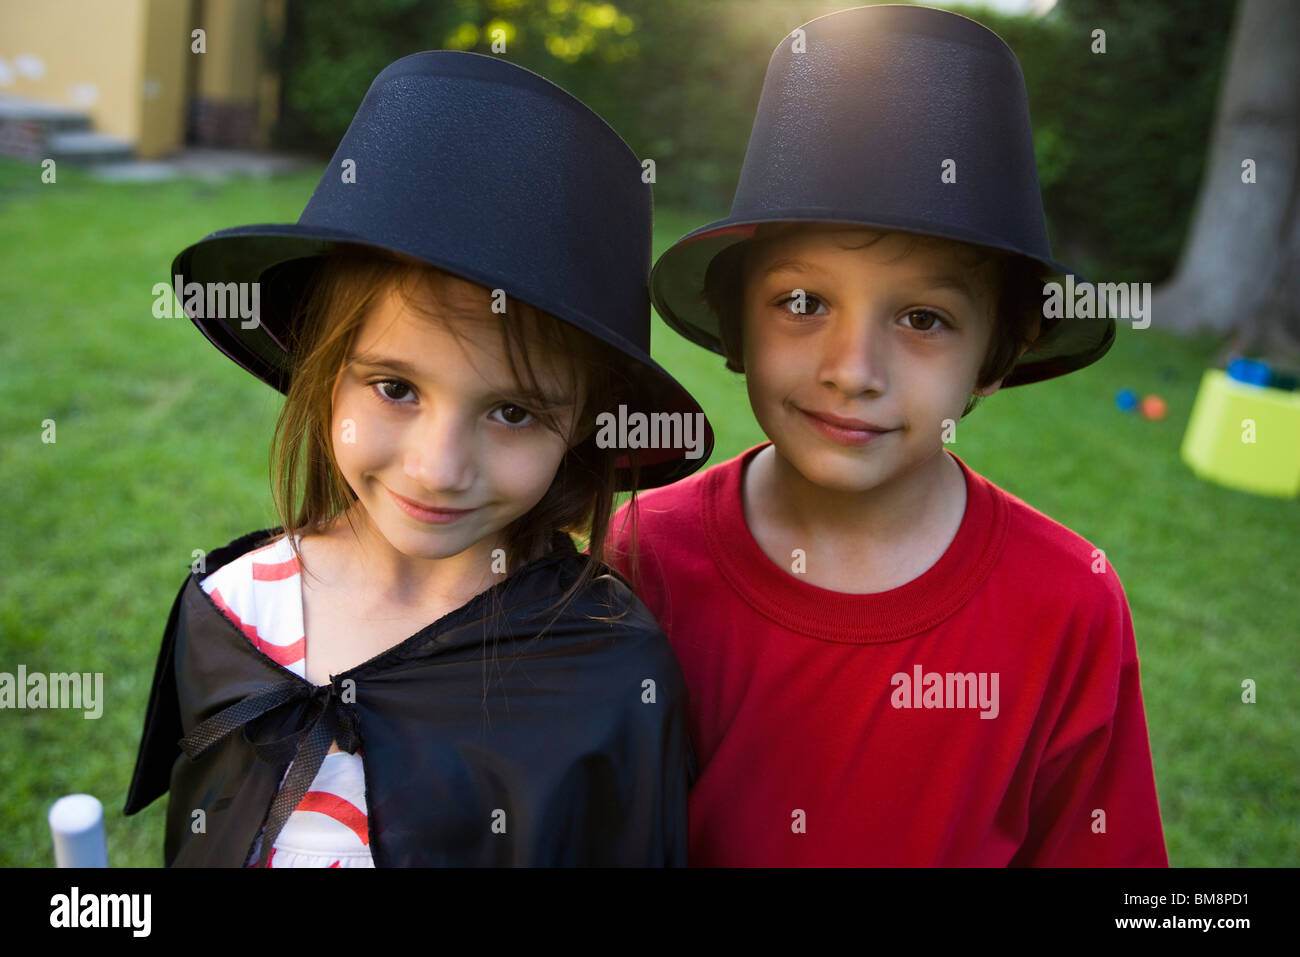 Children in costume, portrait Stock Photo